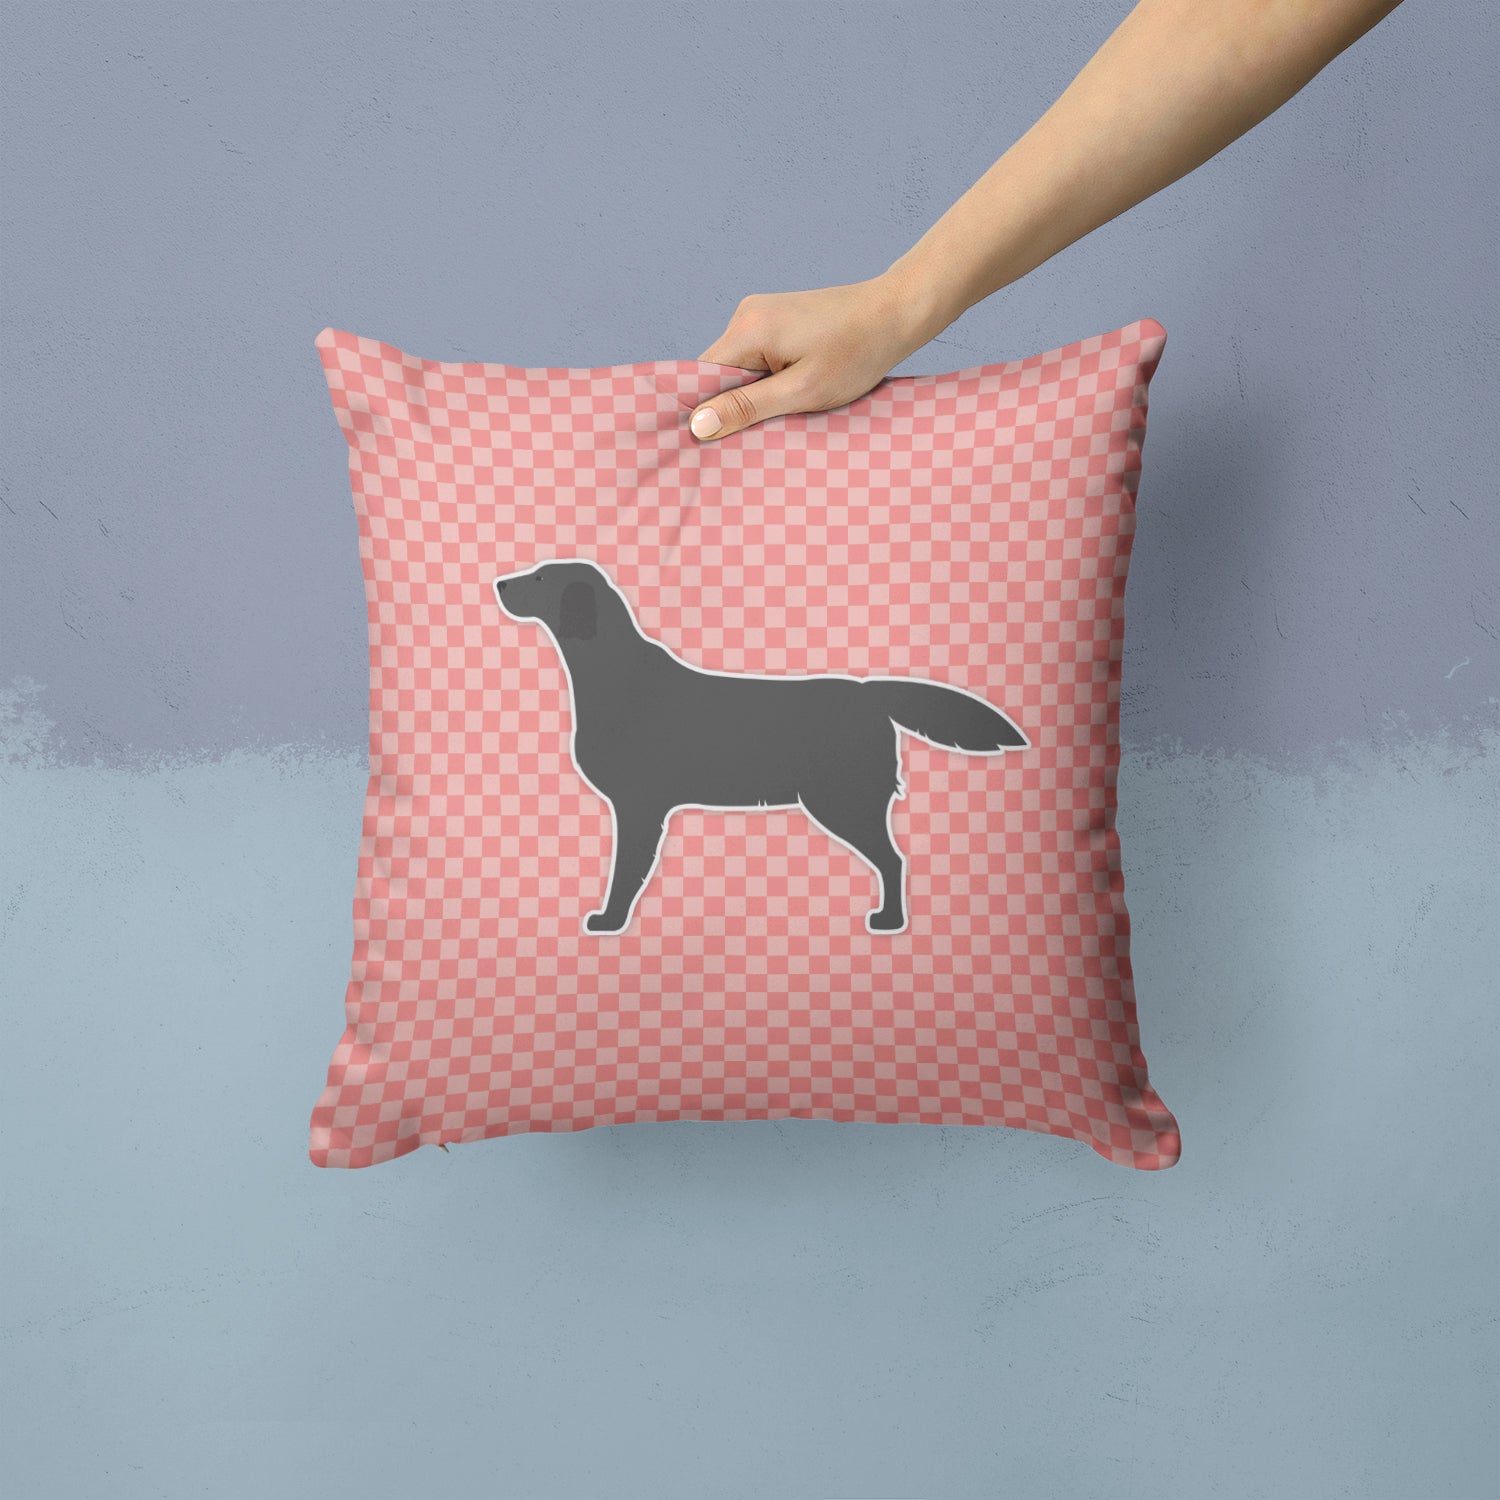 Black Labrador Retriever Checkerboard Pink Fabric Decorative Pillow BB3608PW1414 - the-store.com